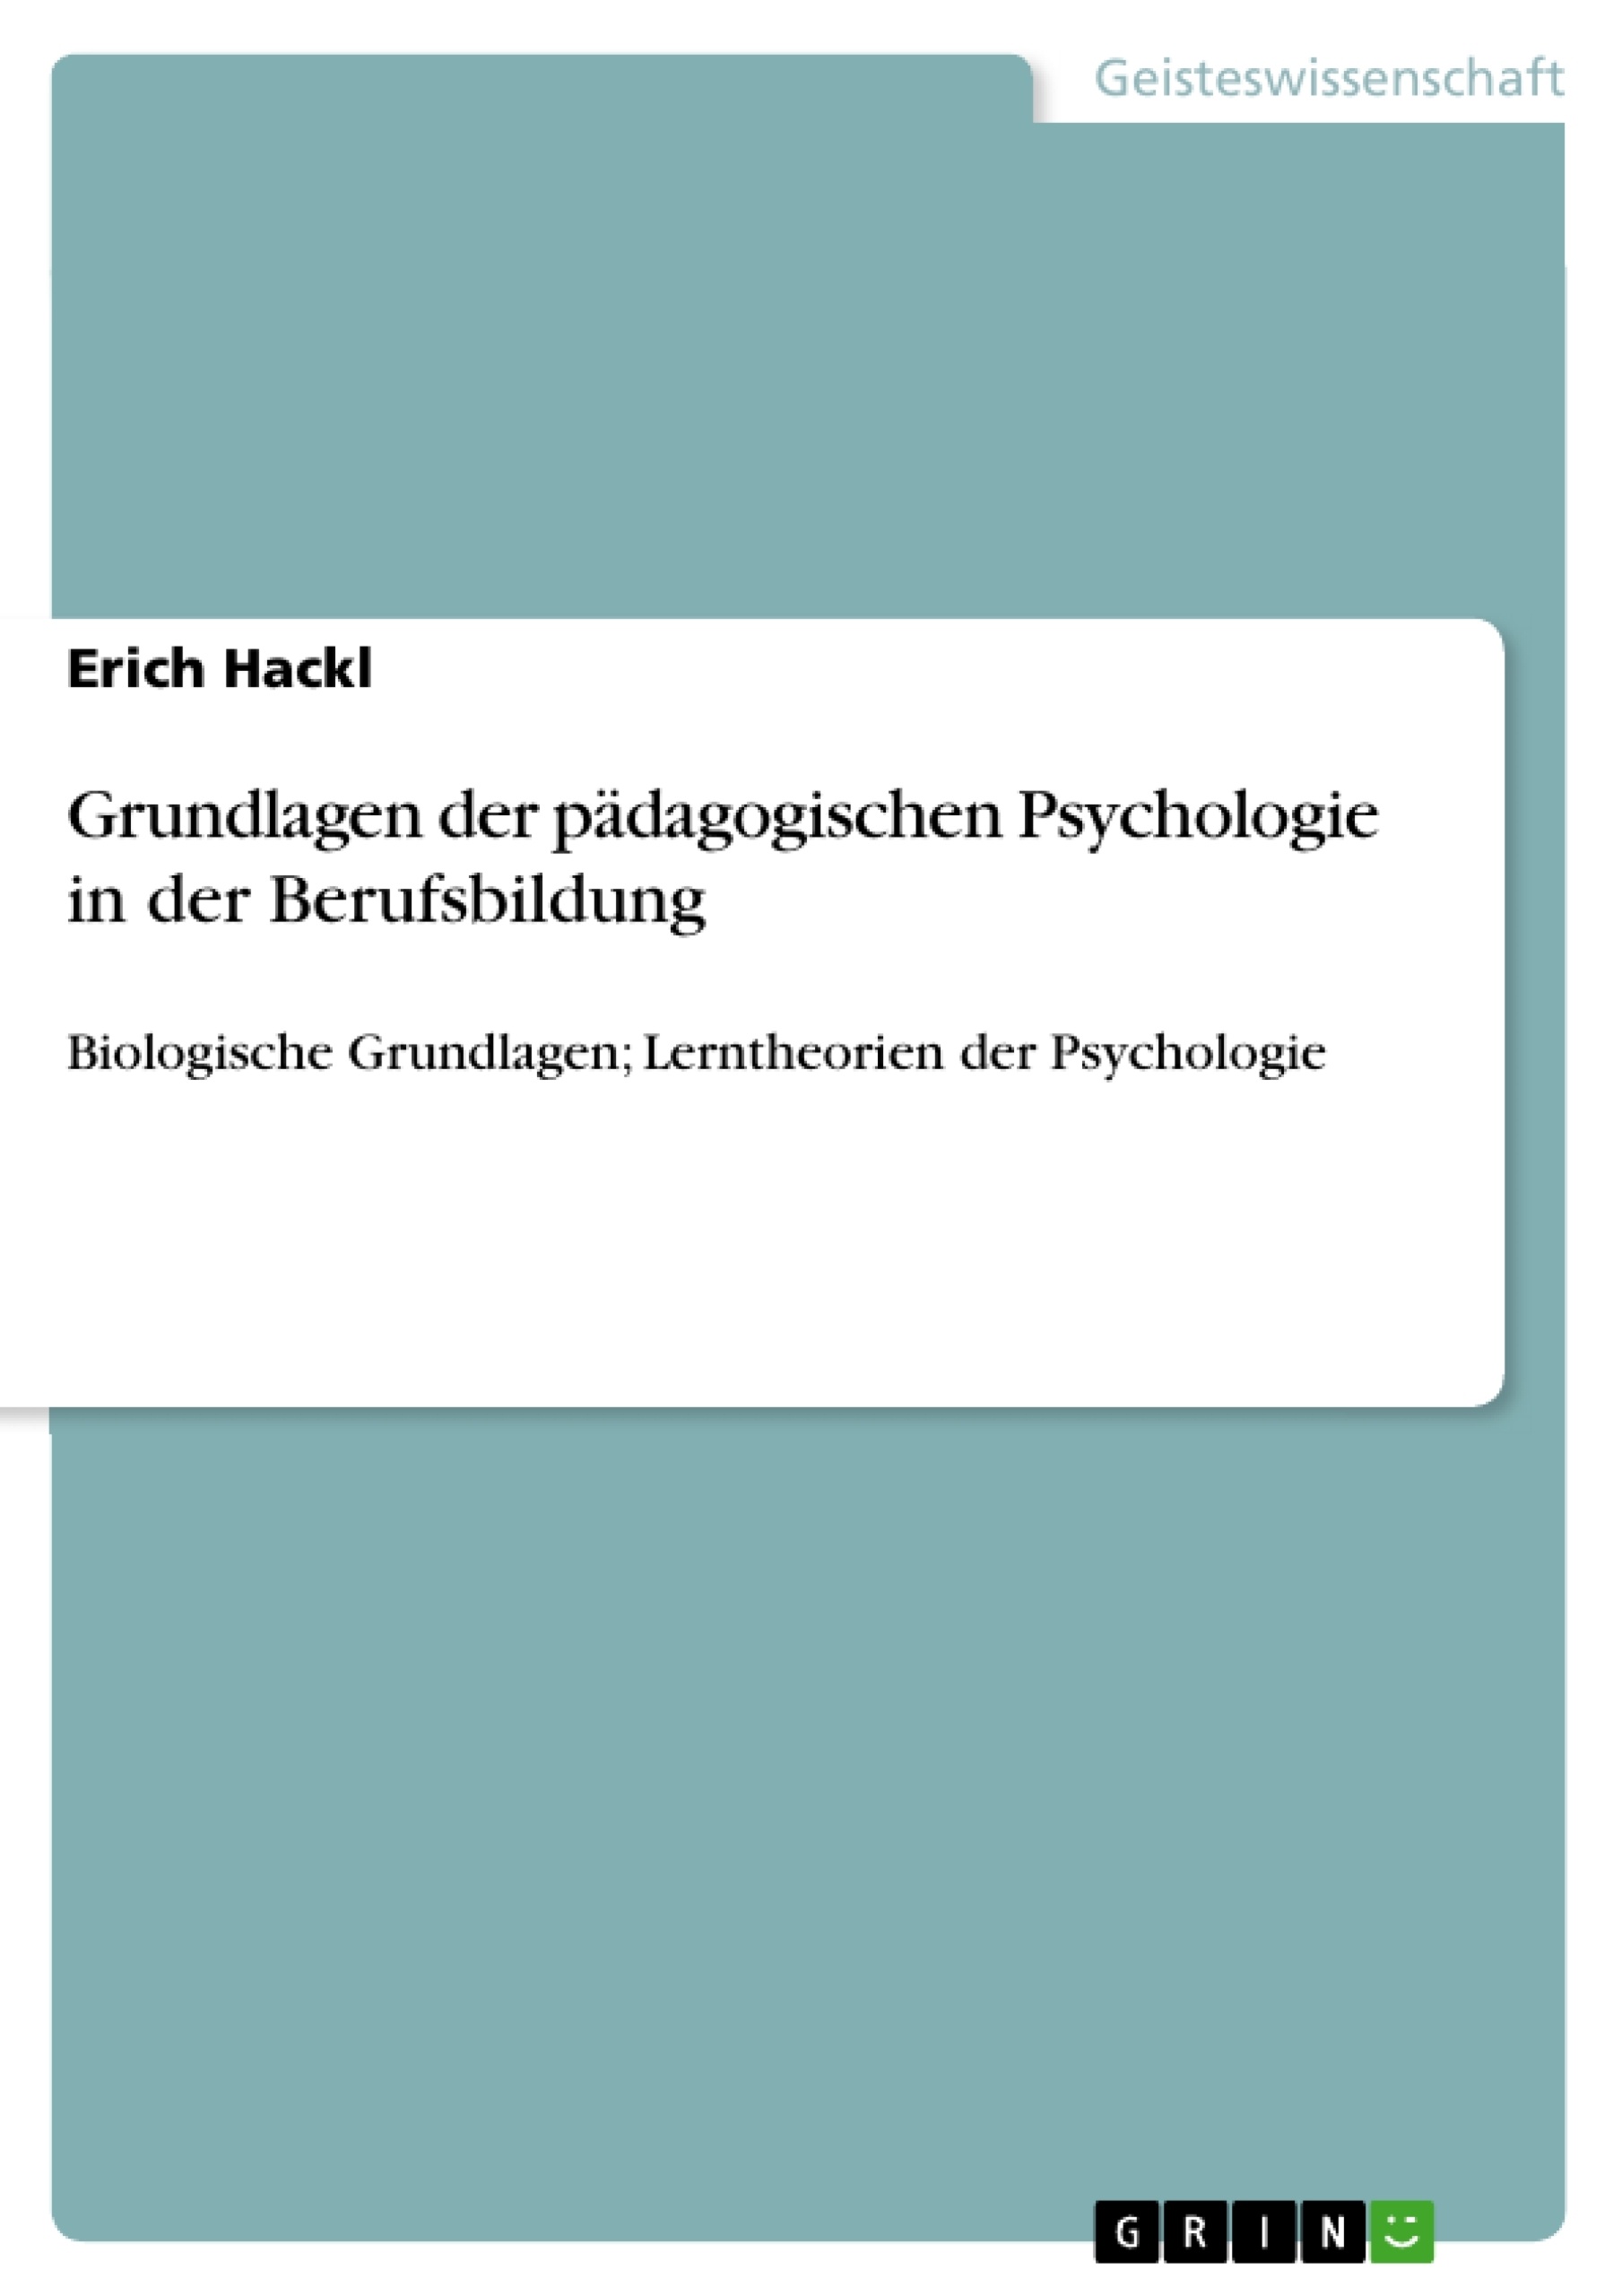 Title: Grundlagen der pädagogischen Psychologie in der Berufsbildung